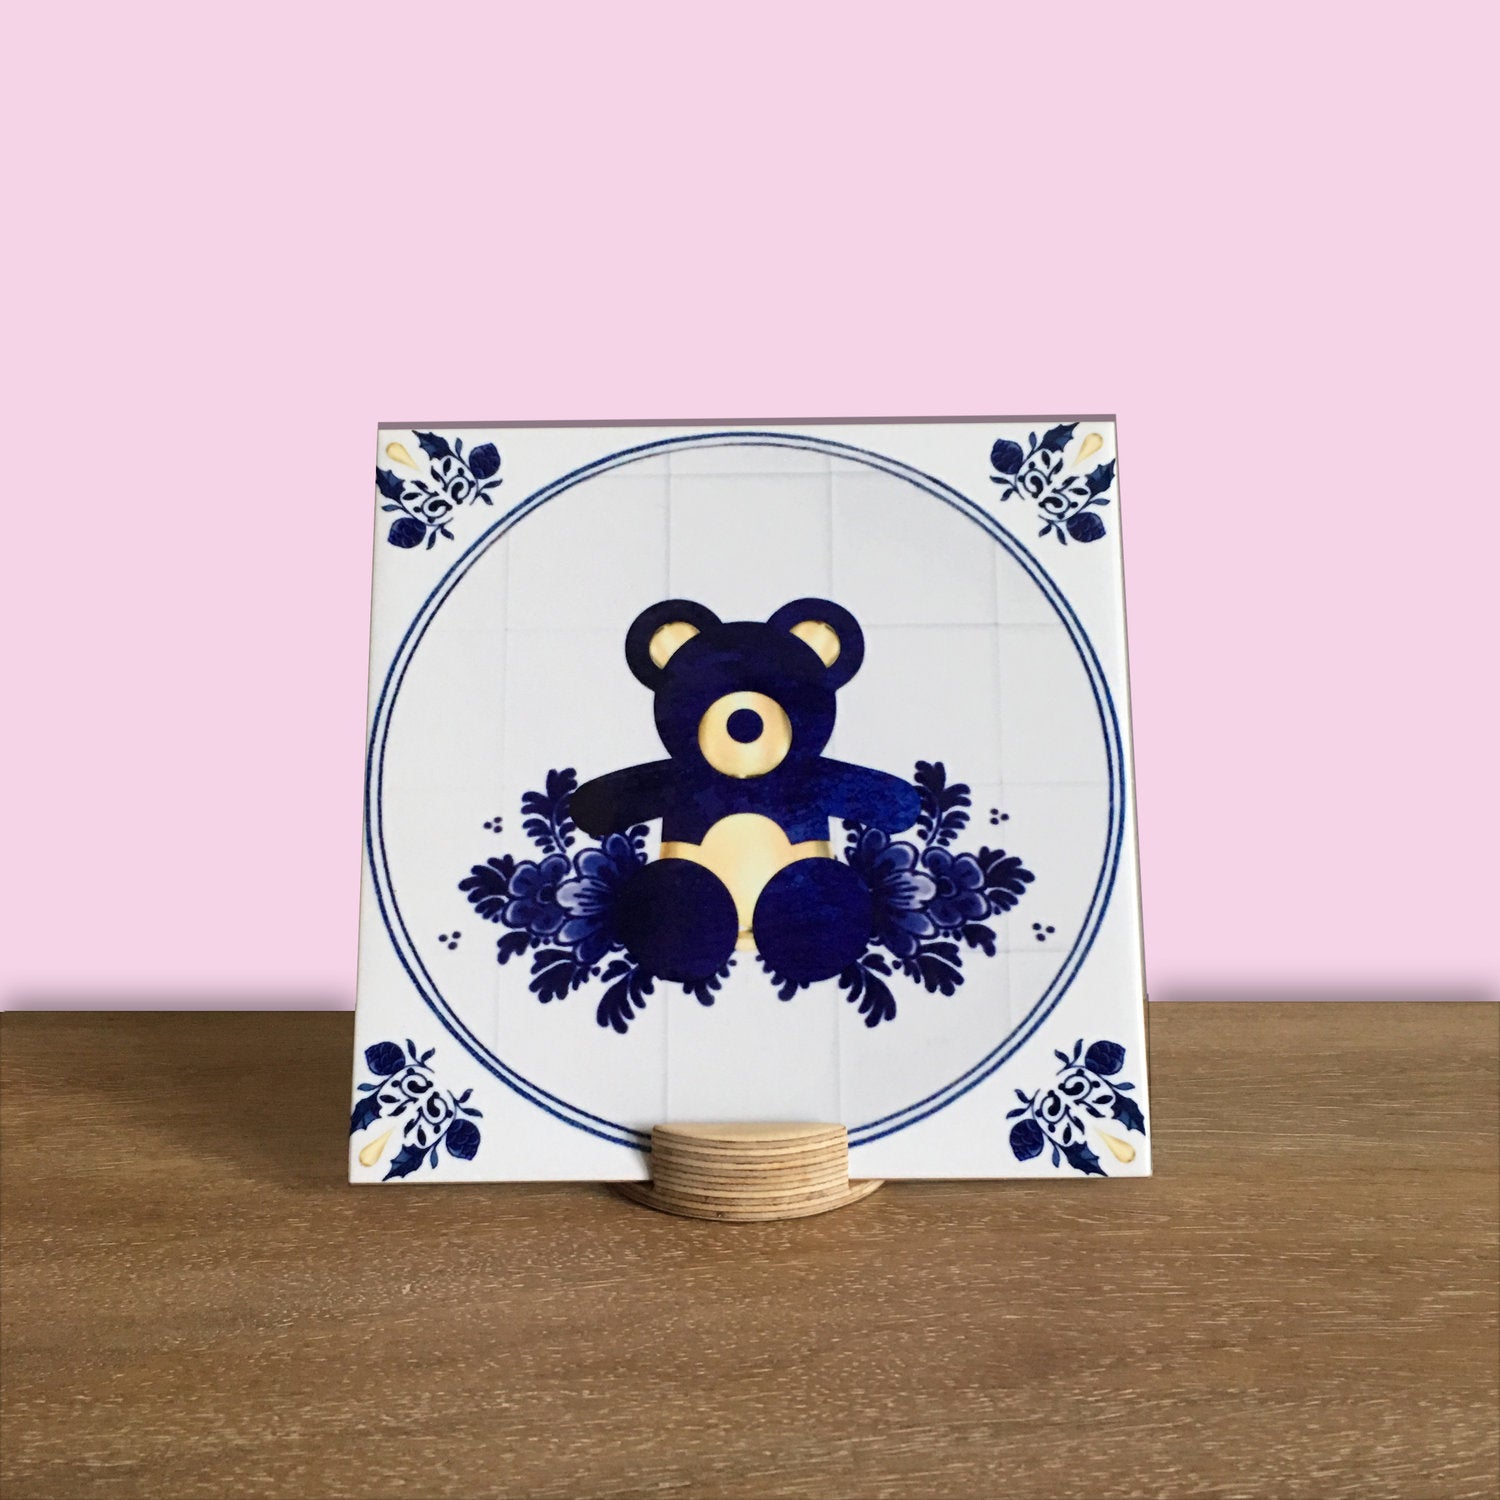 Teddy Bear Picnic - Single Tile Wall Art